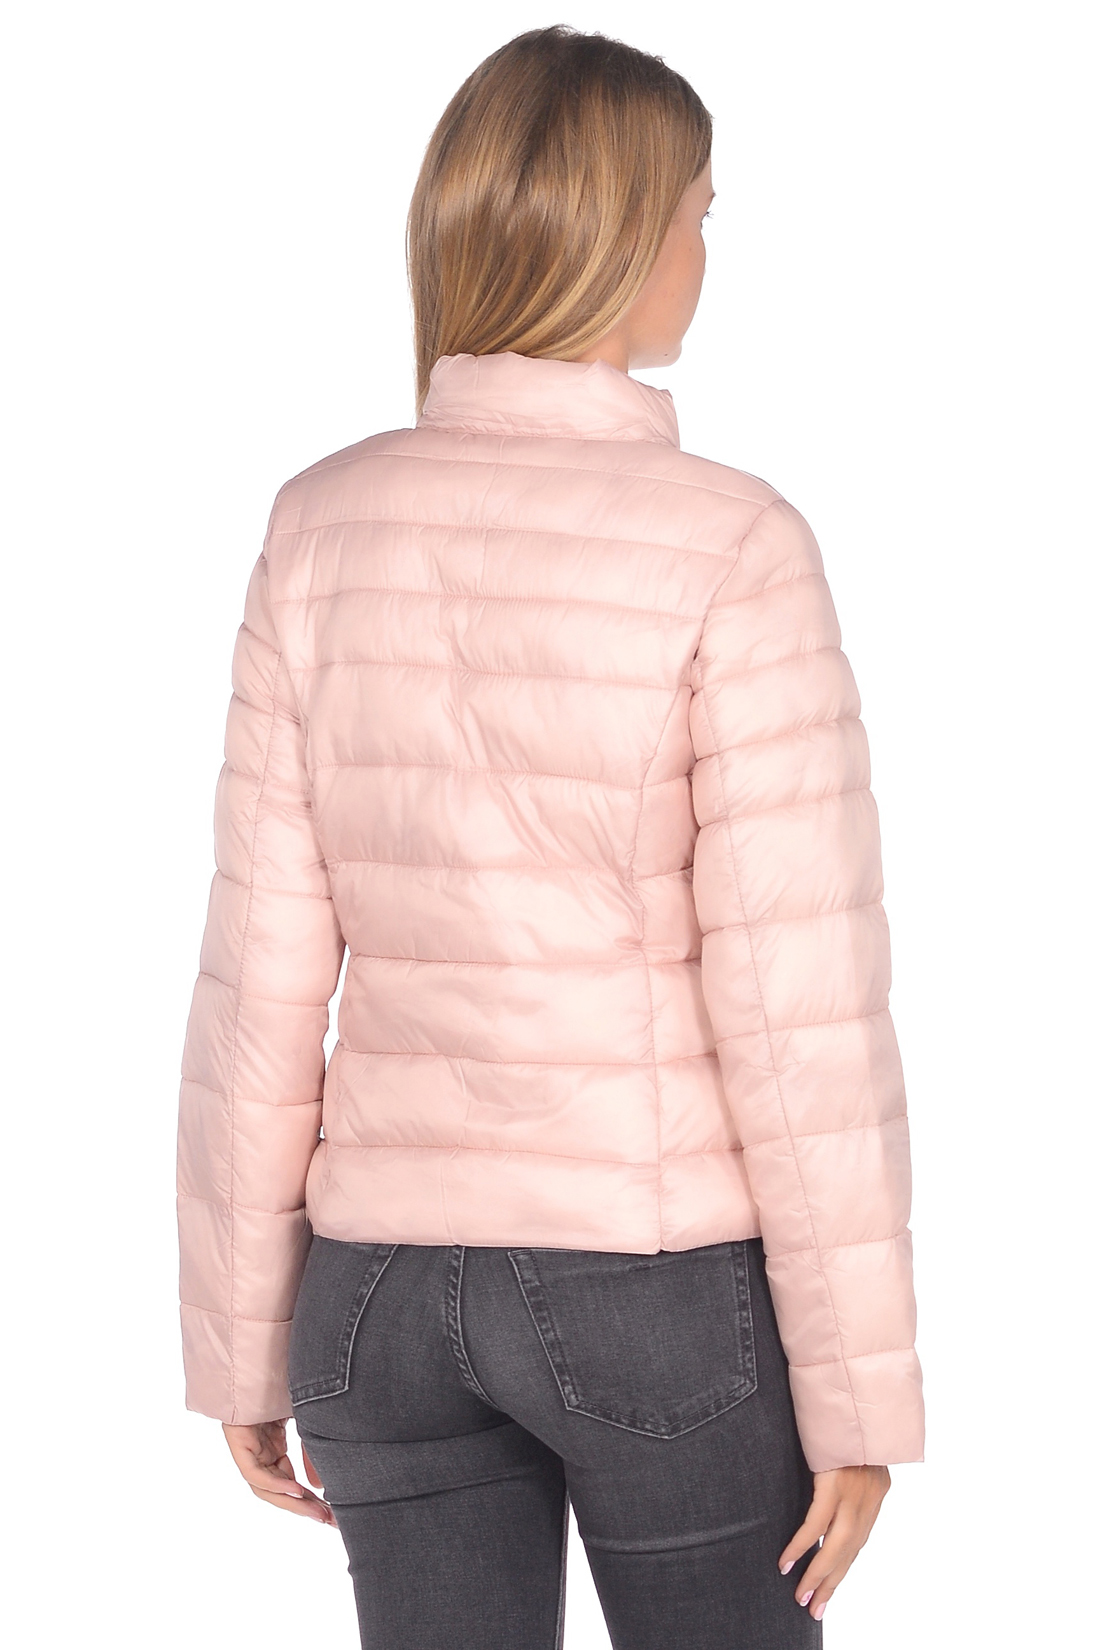 Приталенная куртка с продольной простёжкой (арт. baon B038599), размер XS, цвет розовый Приталенная куртка с продольной простёжкой (арт. baon B038599) - фото 2